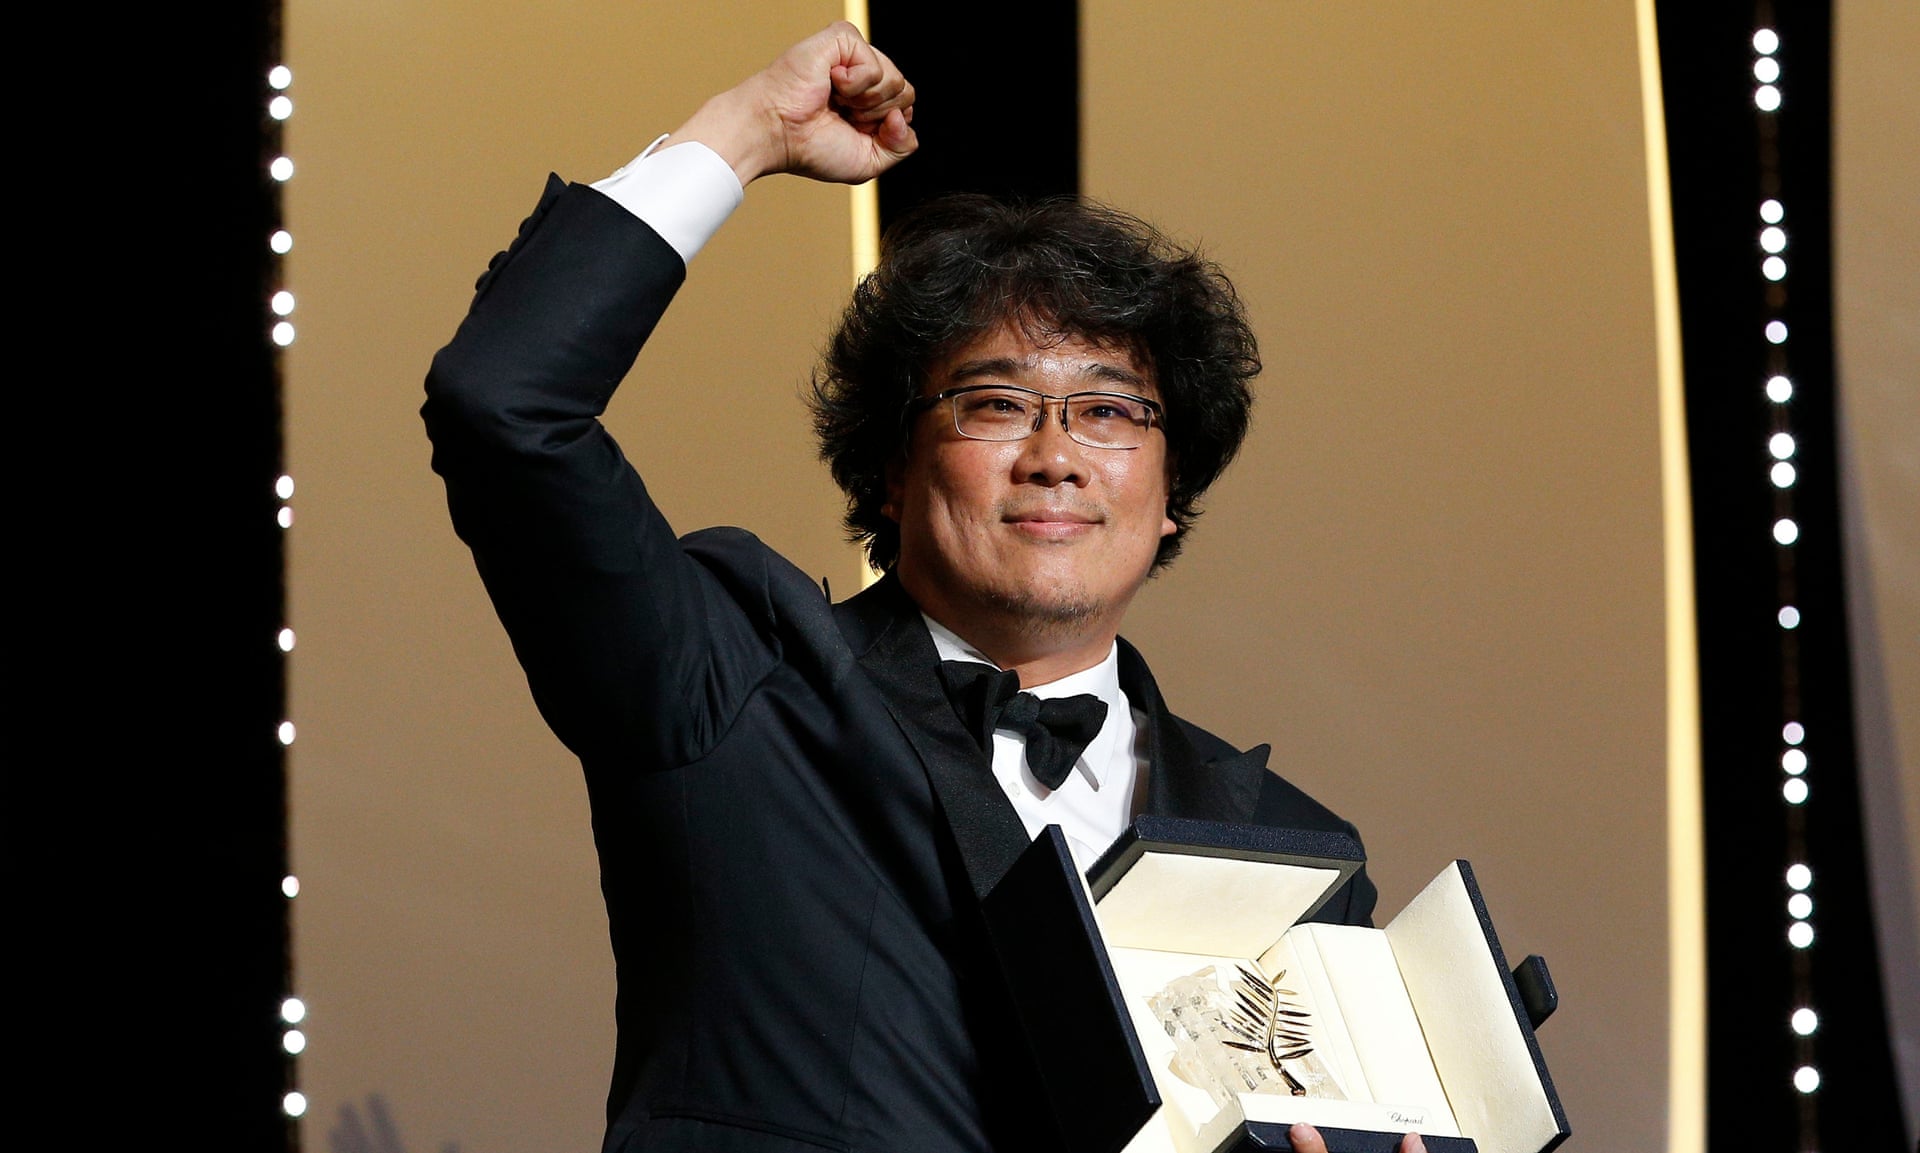 برندگان جشنواره فیلم کن 2019 مشخص شدند